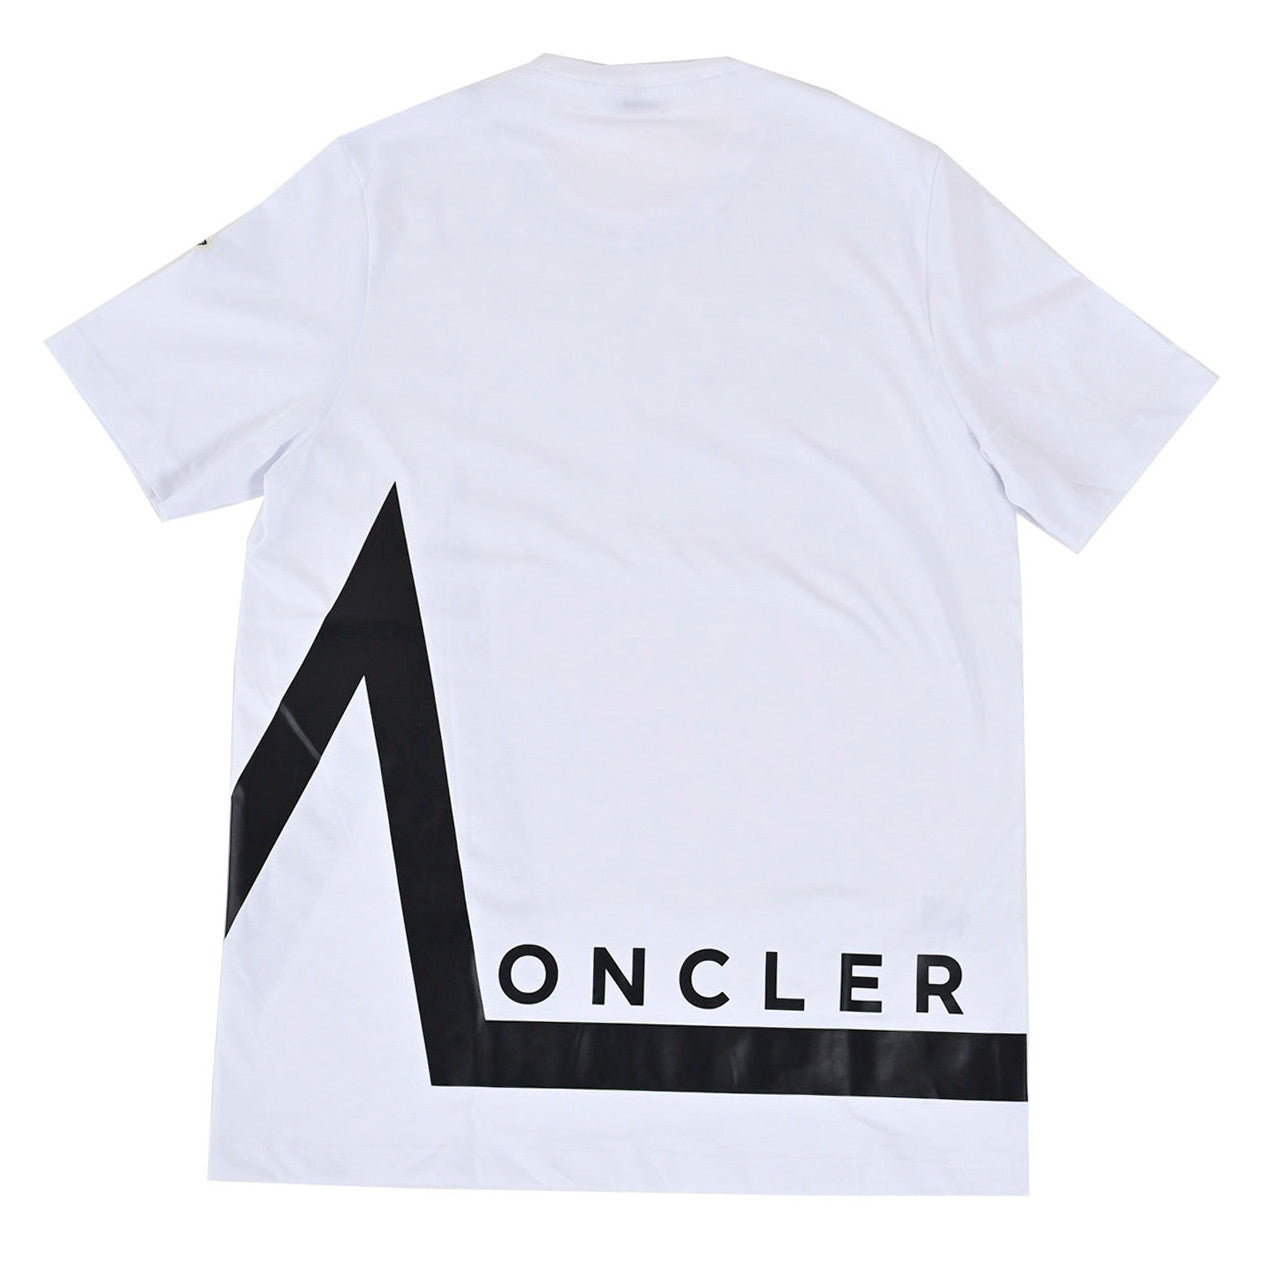 モンクレール MONCLER Tシャツ 8C00001 8390T 001 ホワイト 年秋冬 メンズ